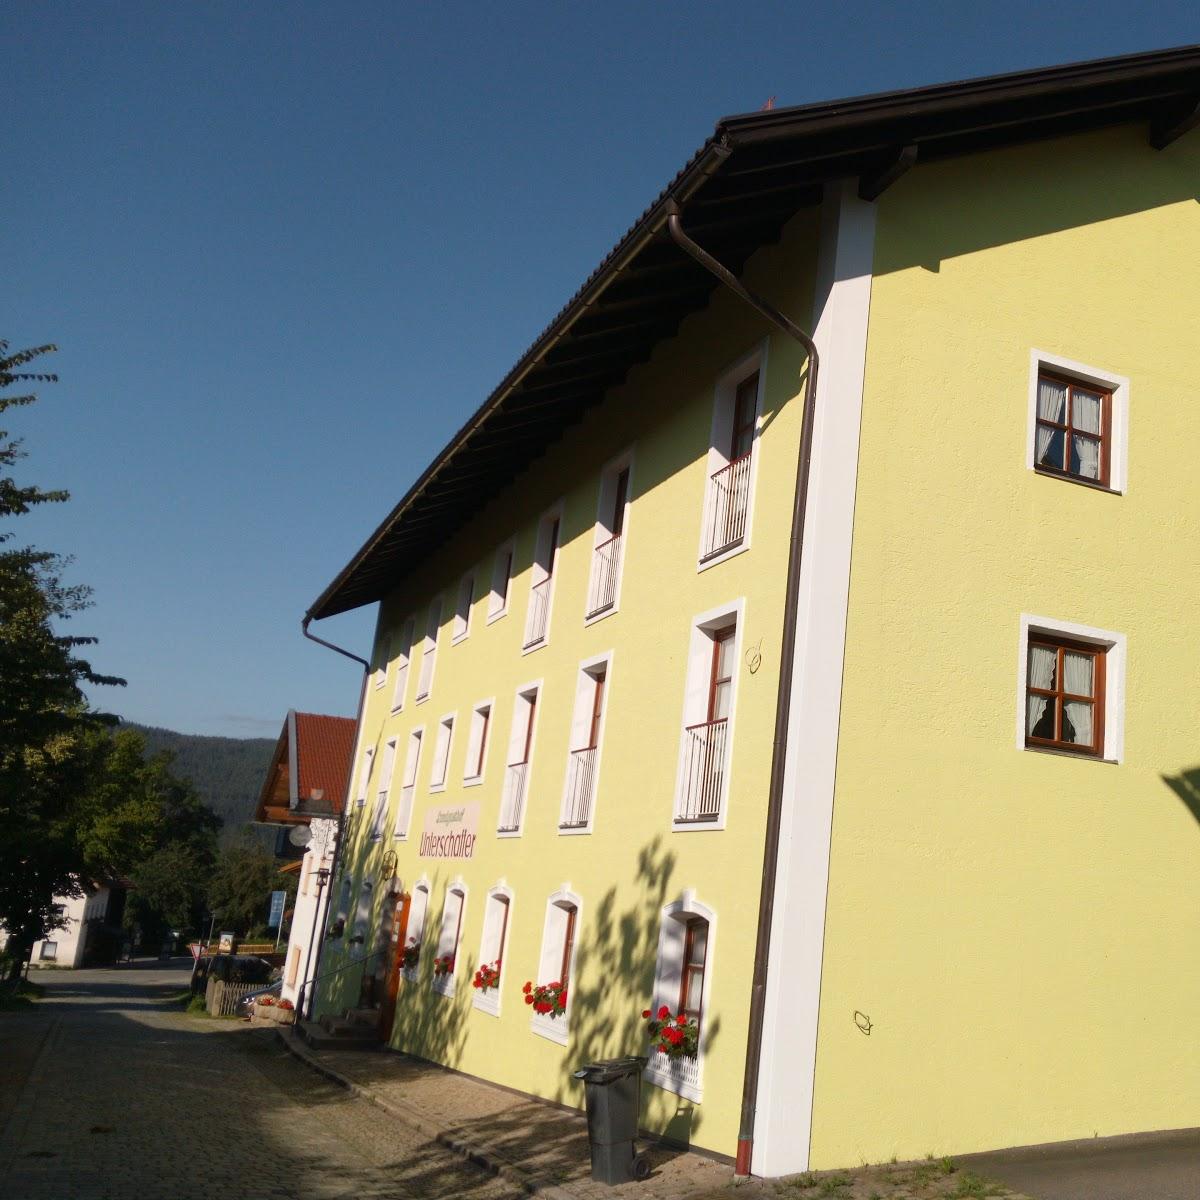 Restaurant "Unterschaffer Landgasthof" in Arnbruck